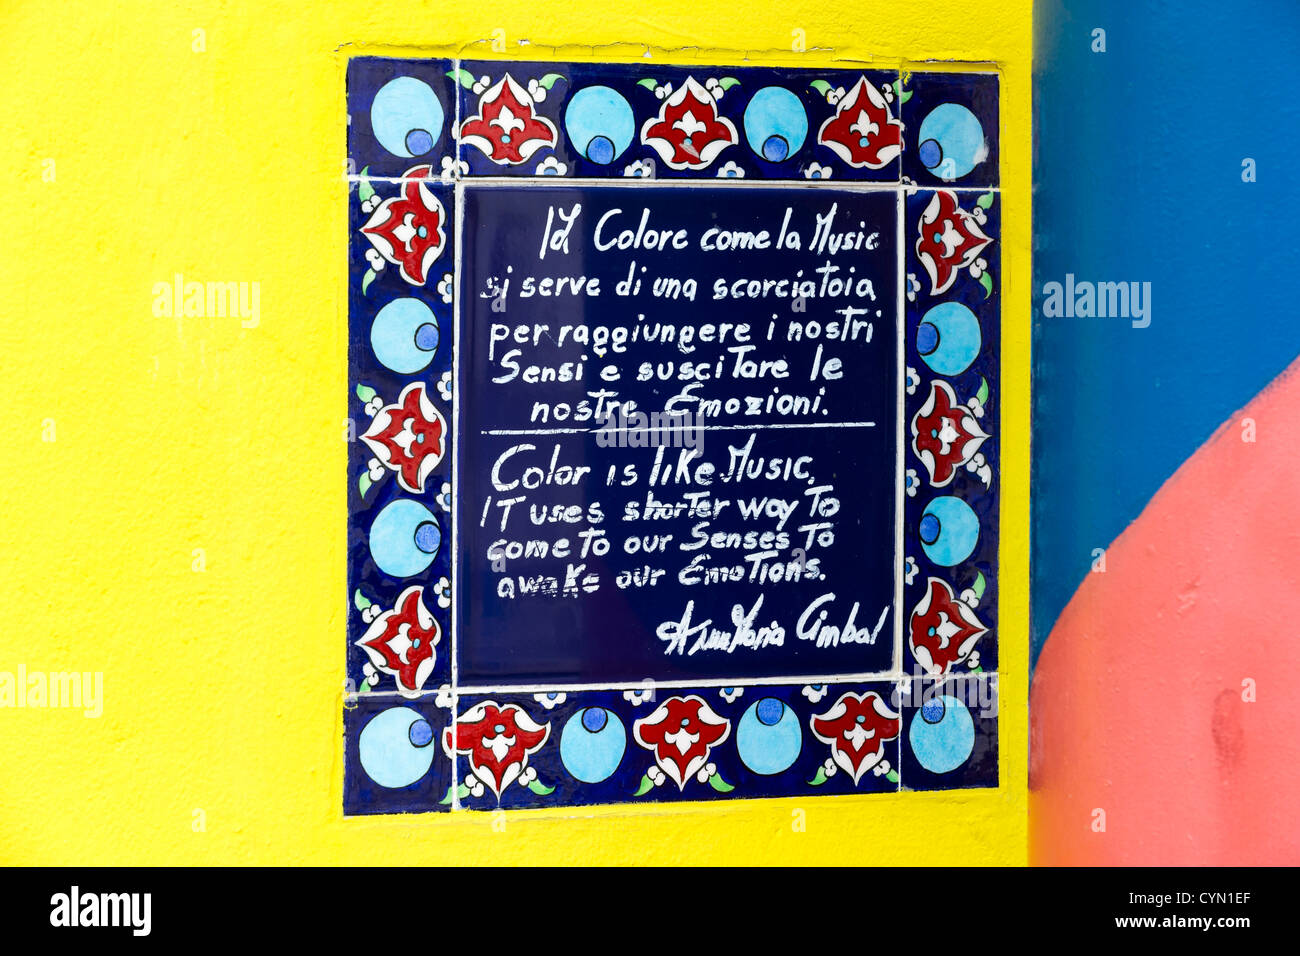 Gedenktafel an der Wand des Hauses der Künstler Annamaria Cimbal feiert die emotionale Wirkung von Farbe und verglich es um Musik Stockfoto